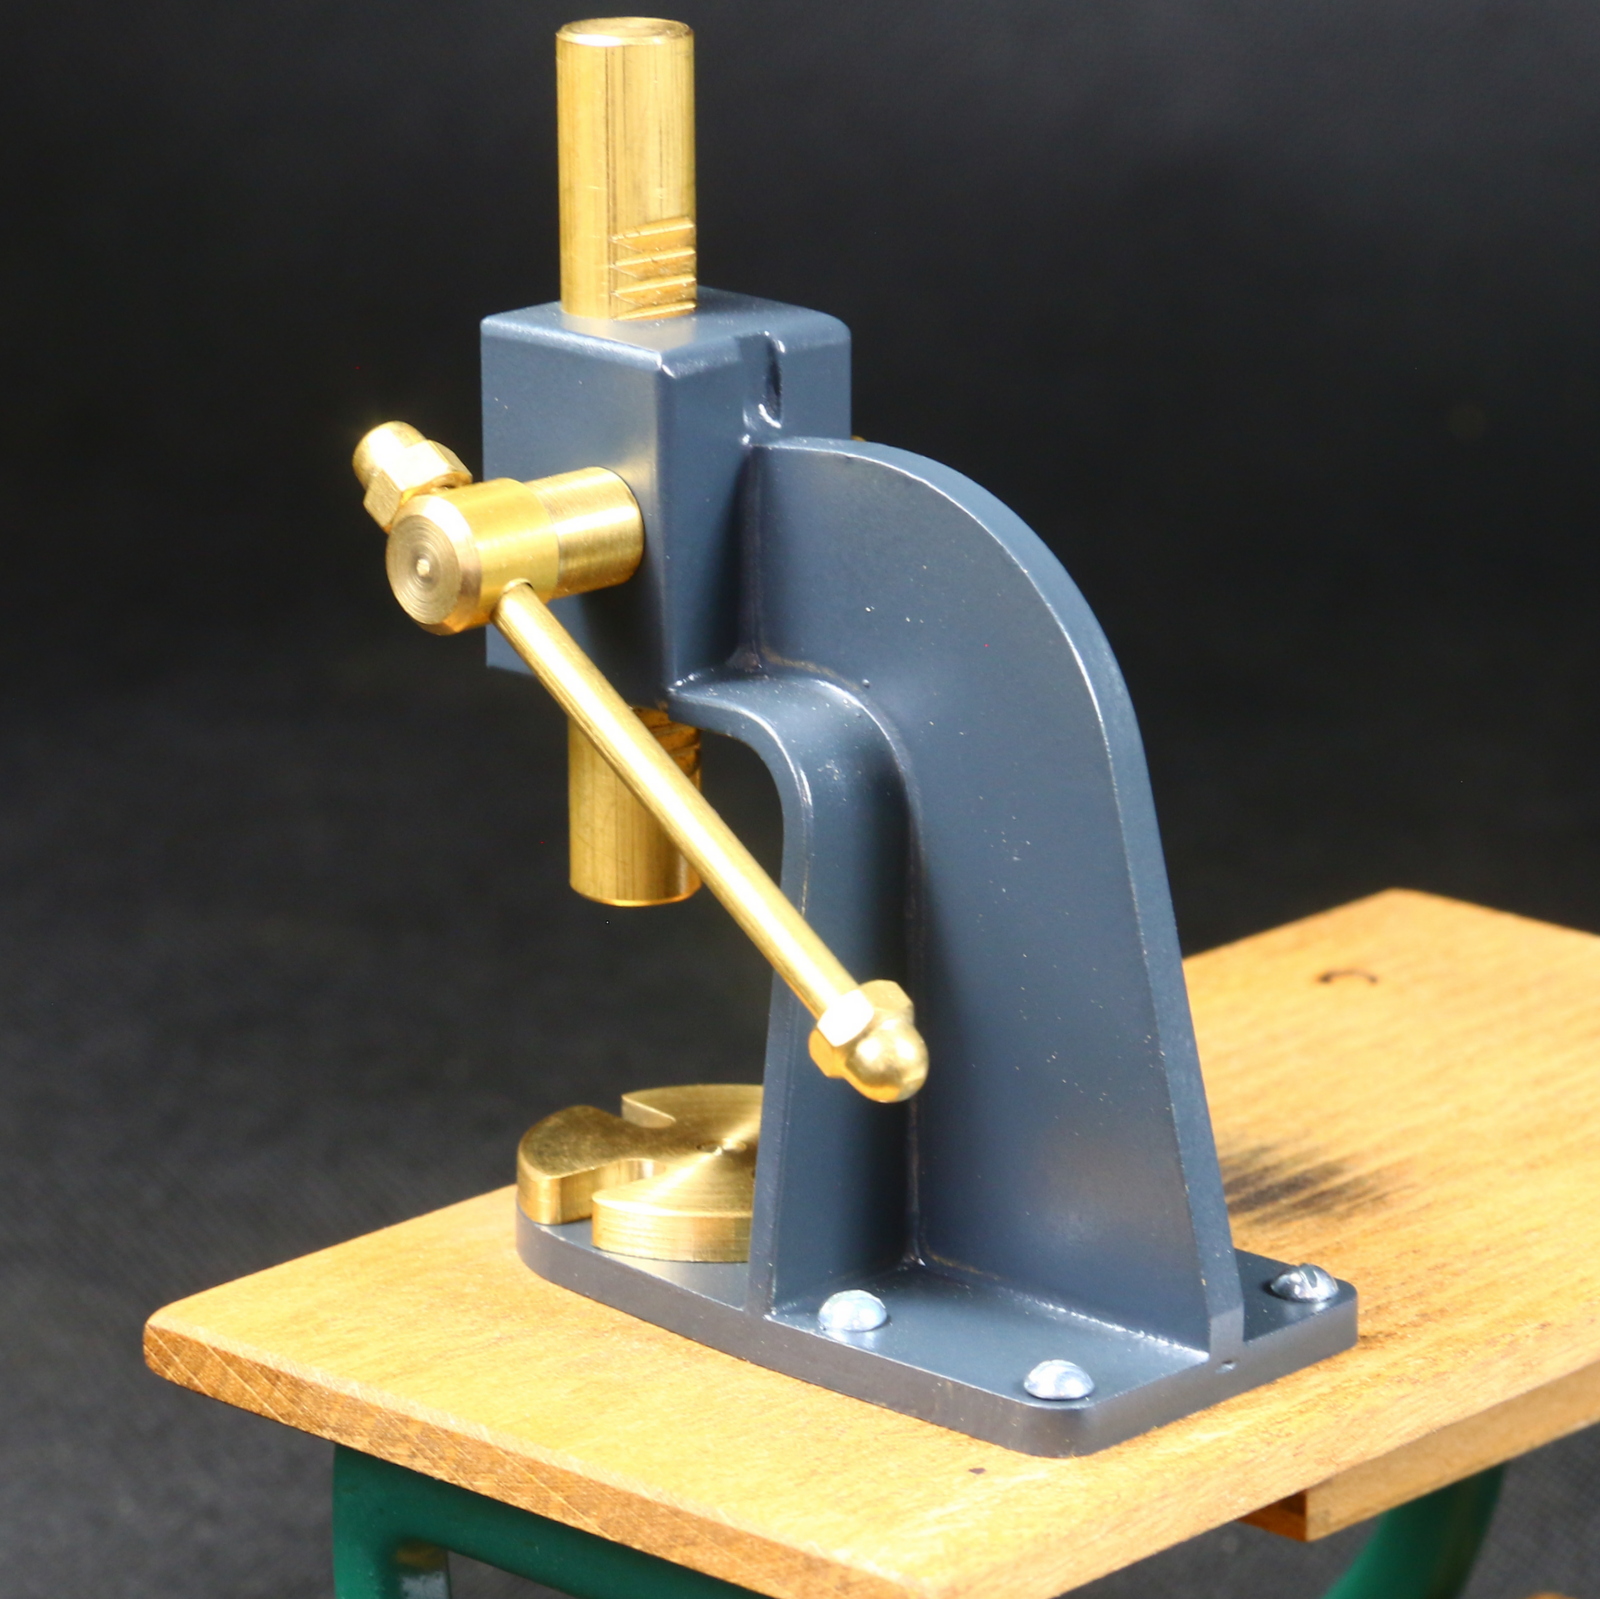 Rotary mandrel press kit